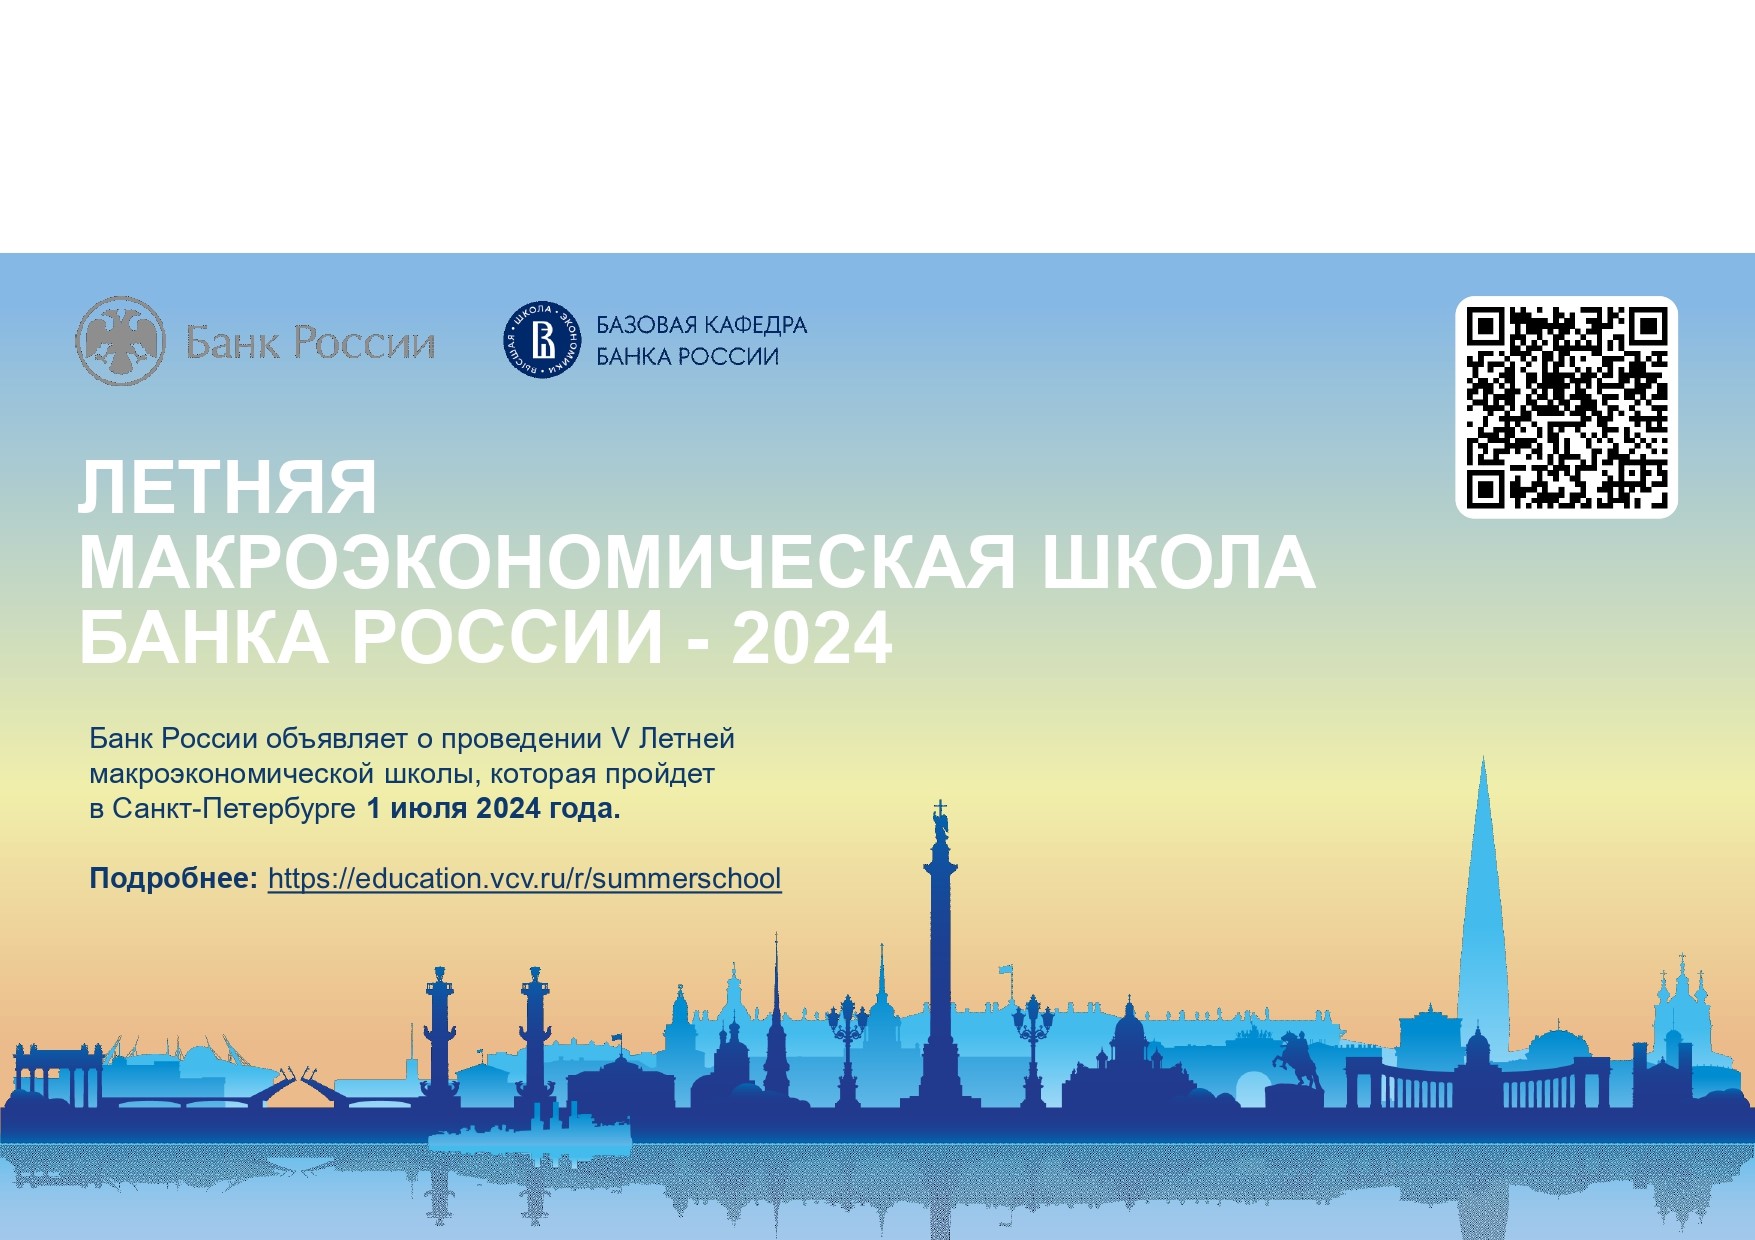 Приглашаем принять участие в V Летней макроэкономической школе и XII Семинаре по экономическим исследованиям, проводимыми Банком России